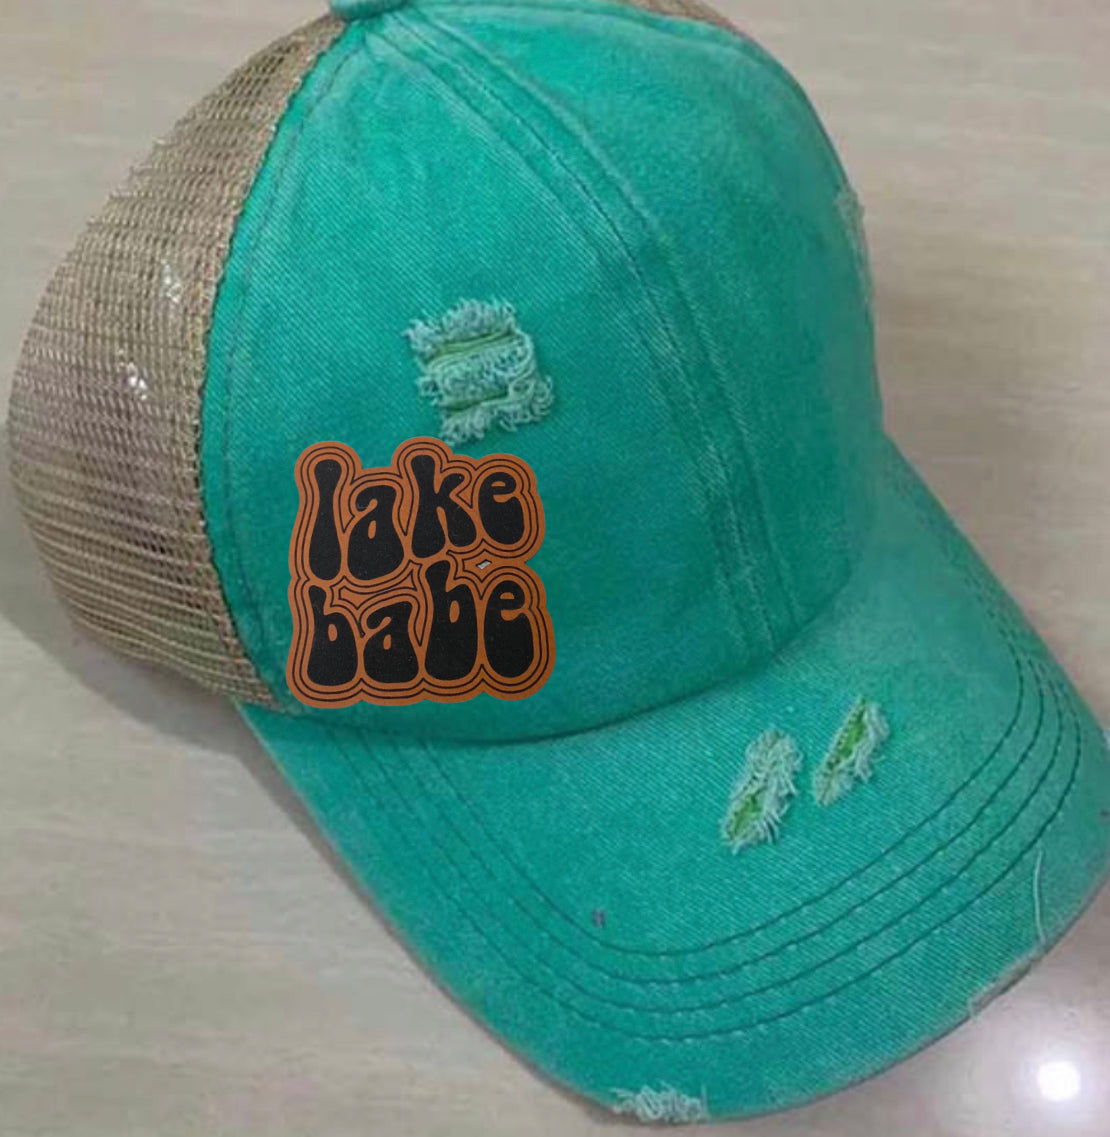 Lake Babe Hat